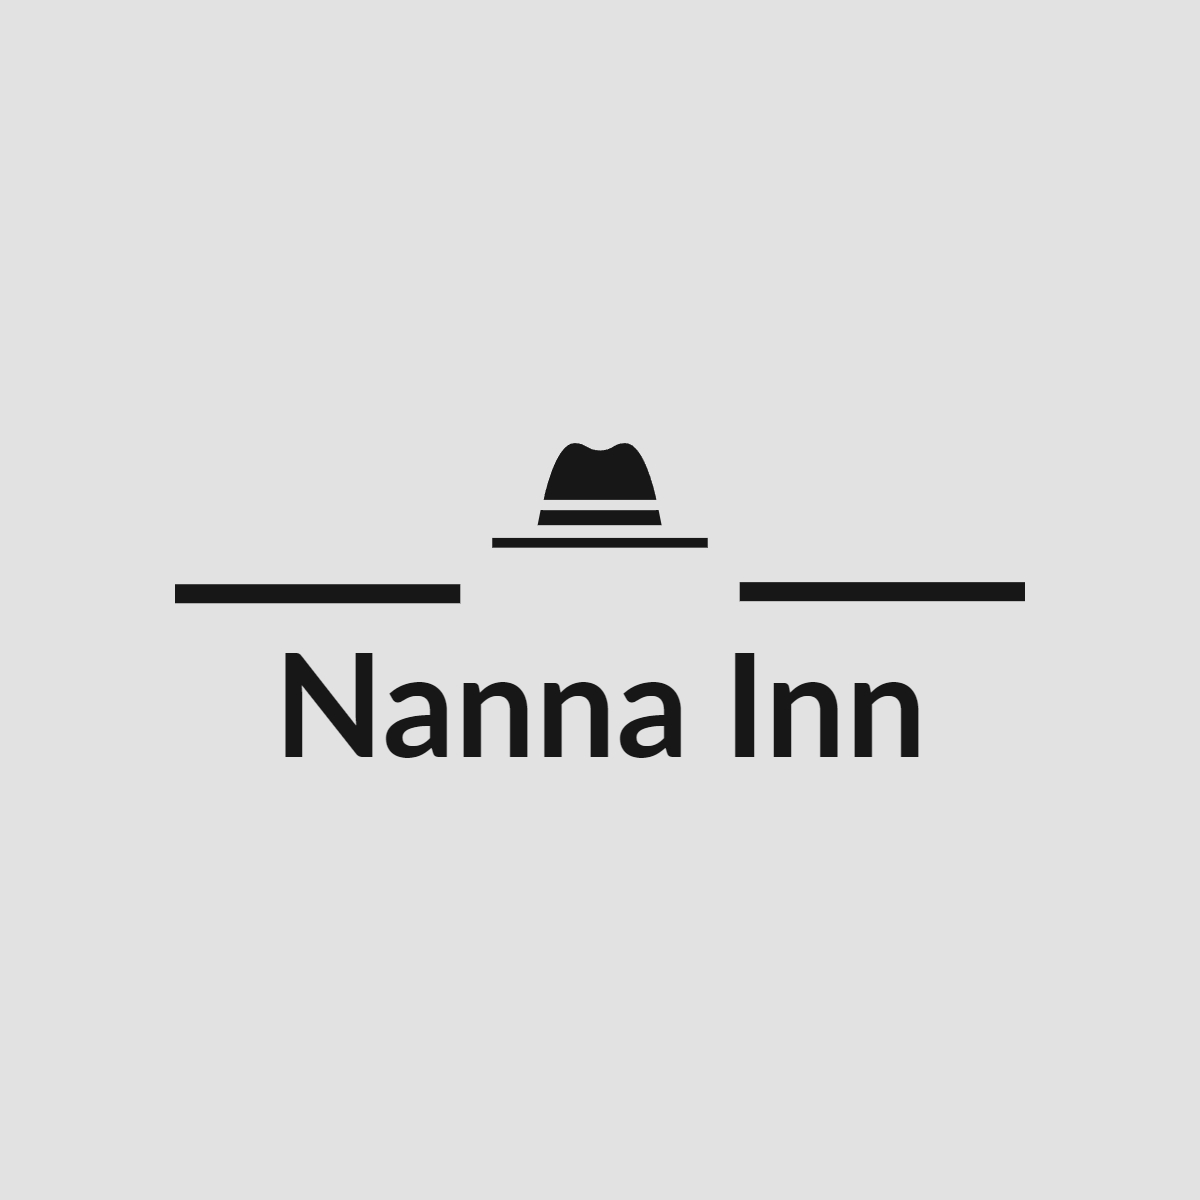 Nanna Inn